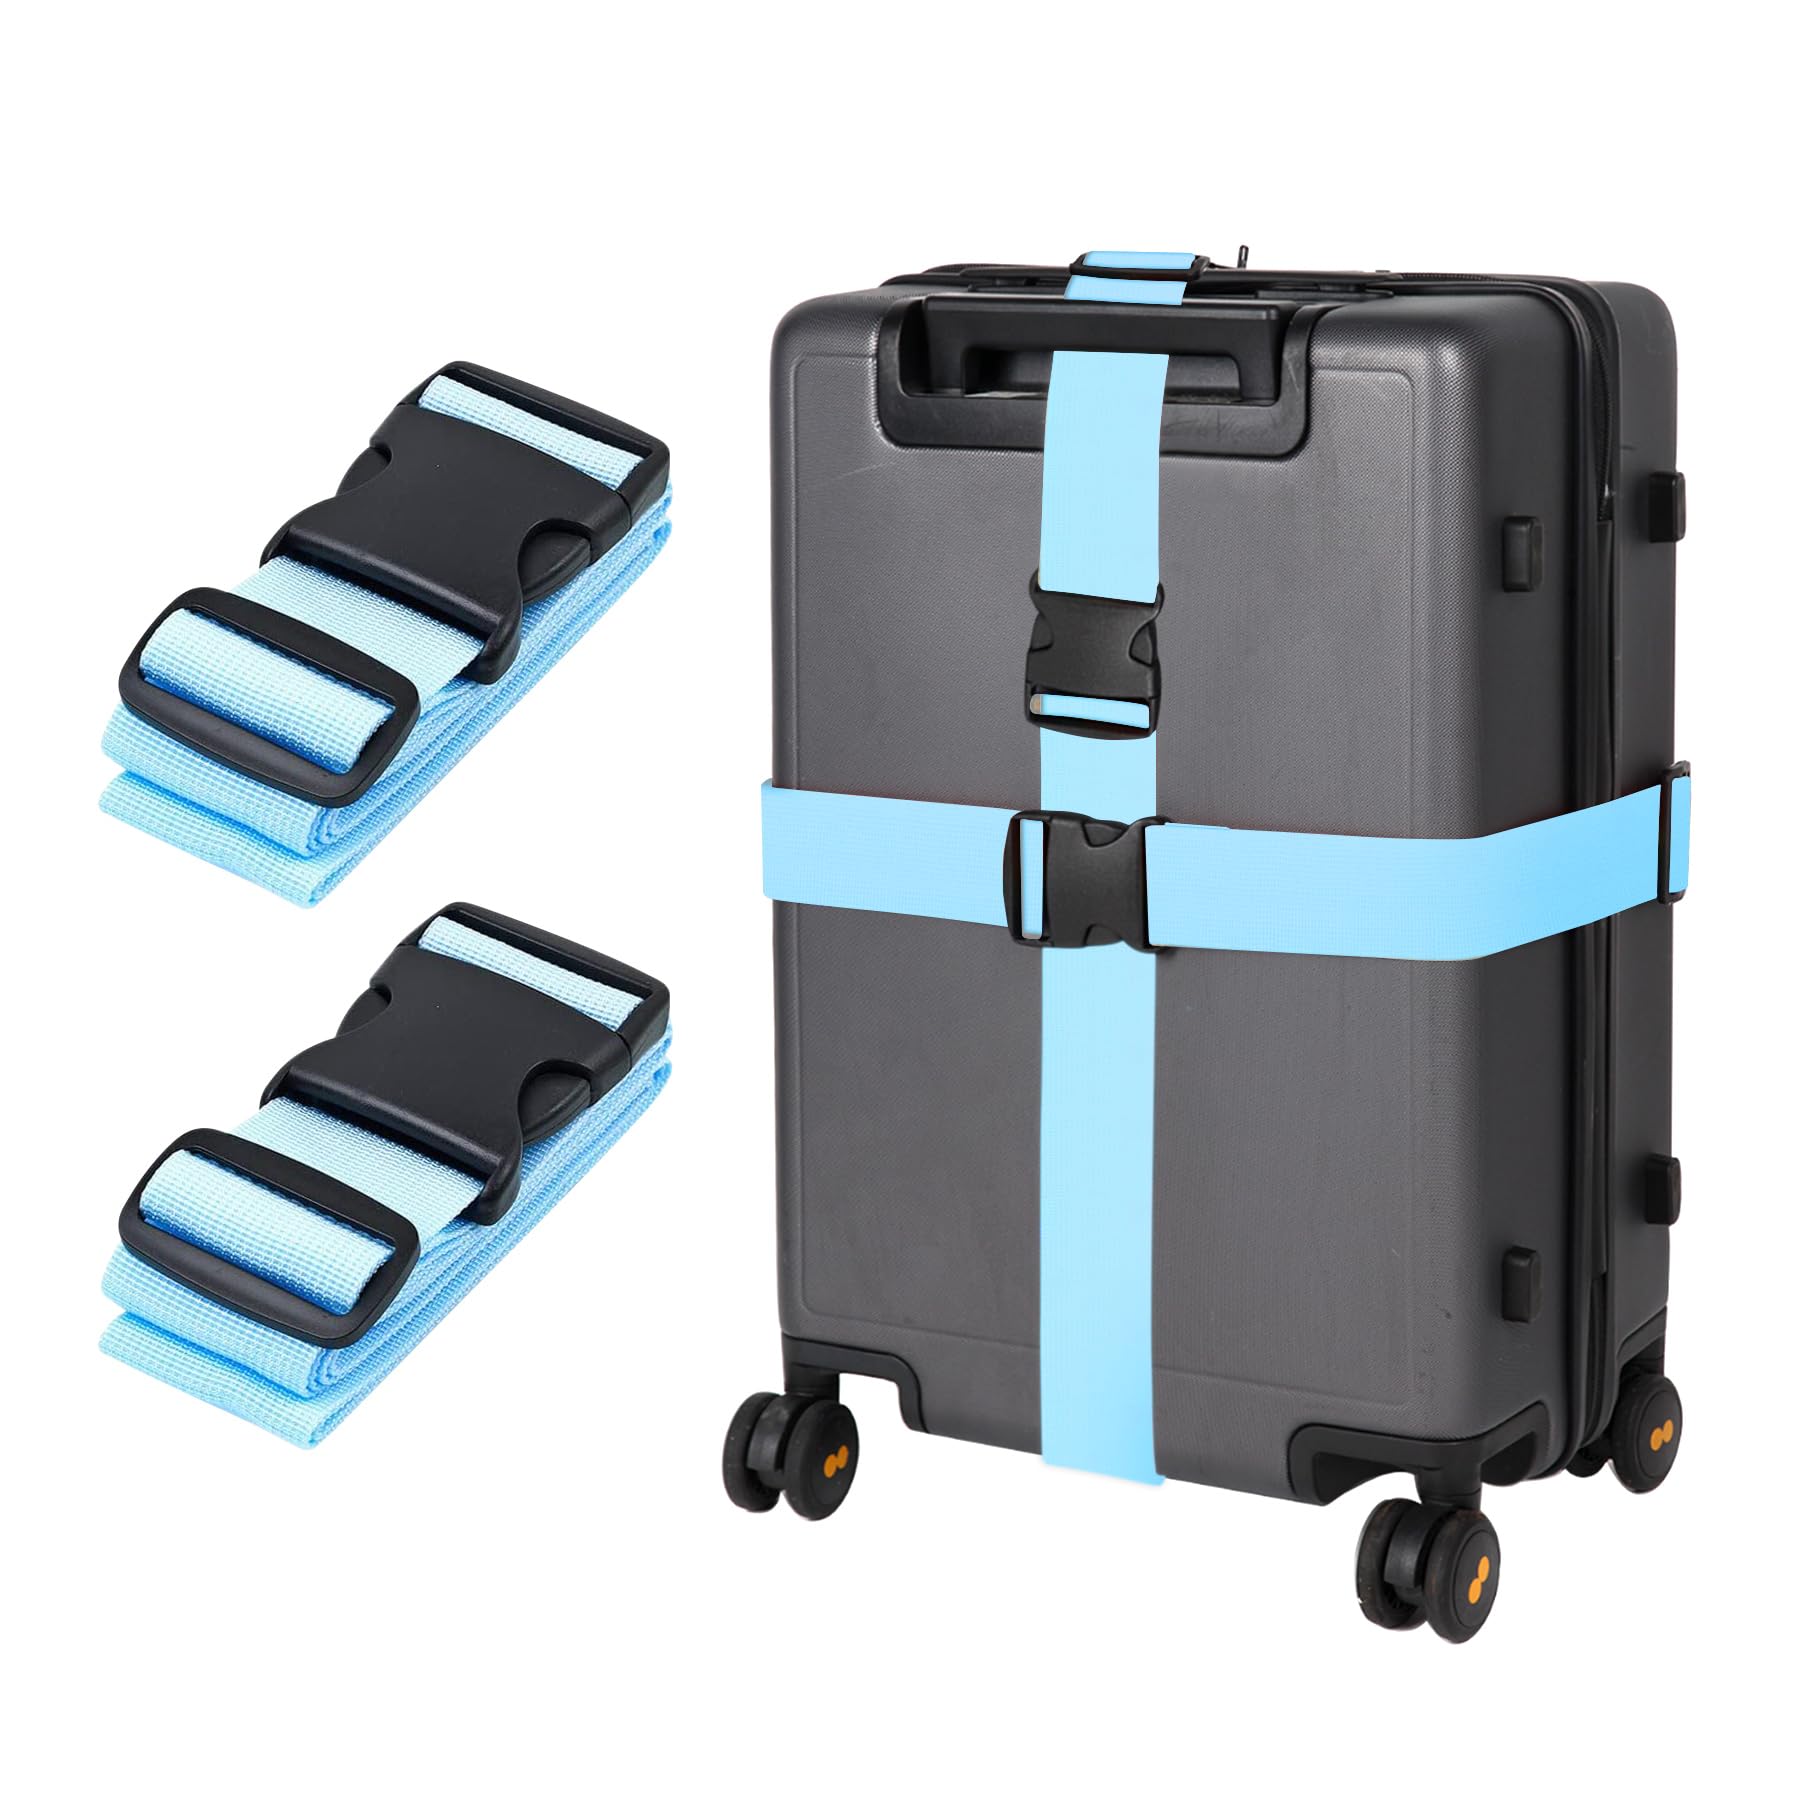 Blau Koffergurt Koffer Band 195cm Gepäckgurt Lang Koffer Gepäckgurte Kofferband Gurt Kofferbänder 2er Set,Verstellbare Koffer Gepäckgurte Luggage Strap für Koffer von guangyuan